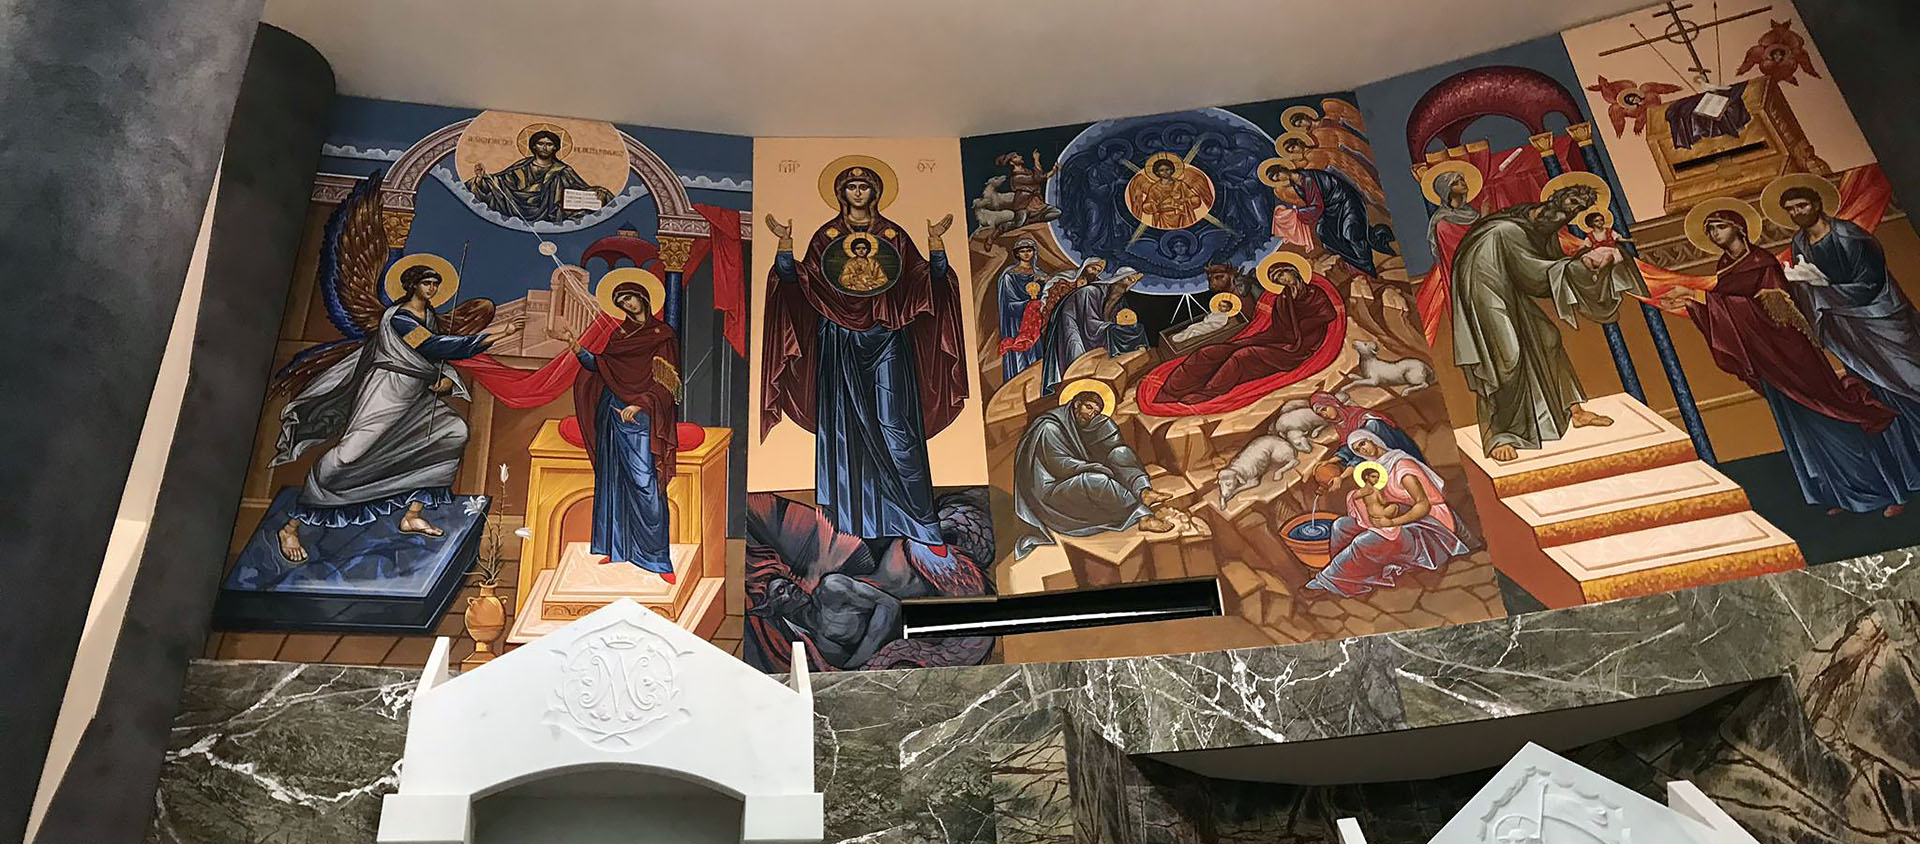 L'Annonciation, la nativité, la présentation de Jésus au temple sont quelques uns des panneaux commandés par le curé de la paroisse Saint-Paul de la ville d'Adrano, en Sicile | DR